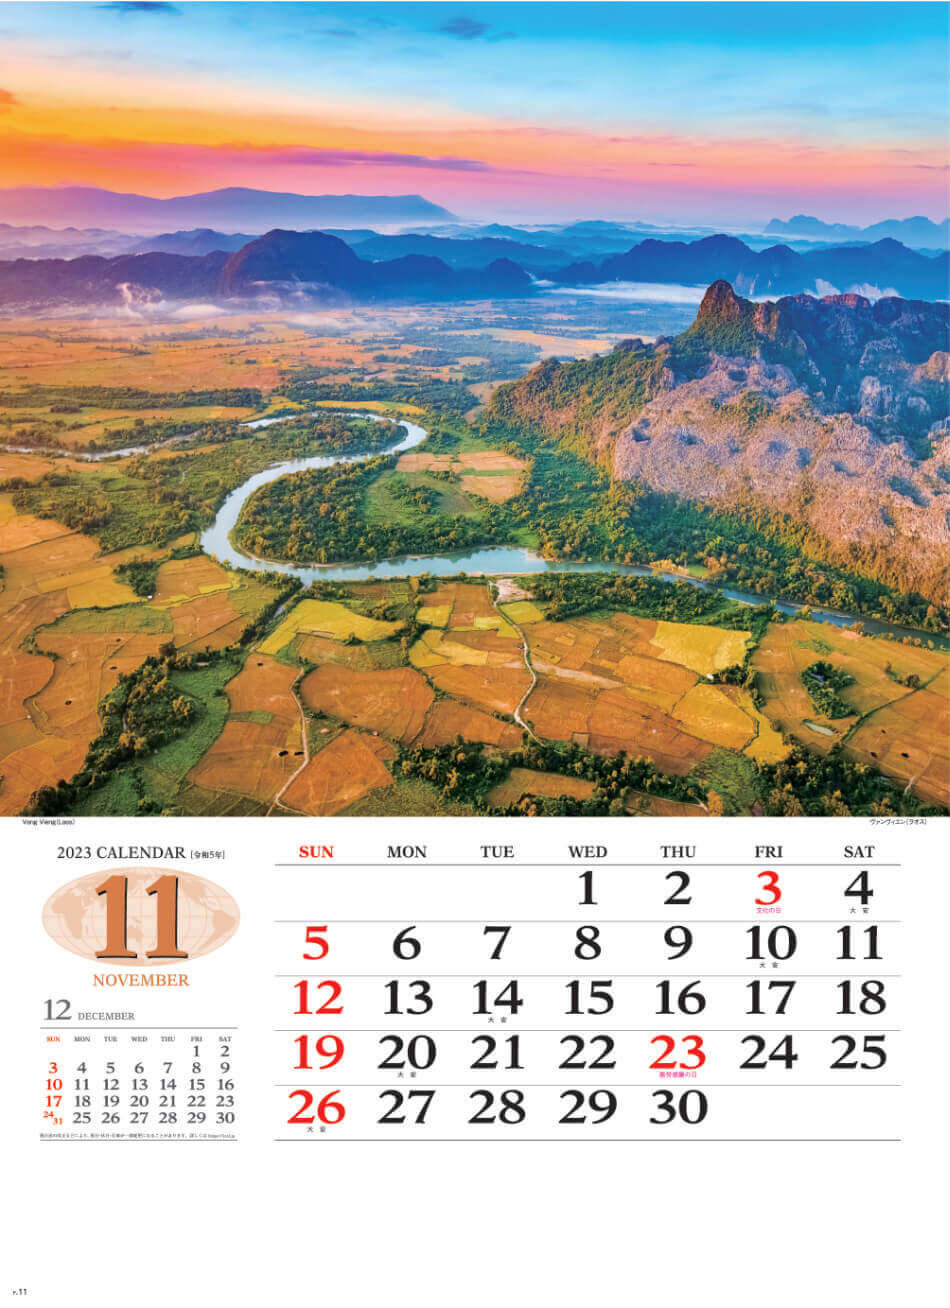 11月 ヴァンヴィエン(ラオス) 世界の景観 2023年カレンダーの画像